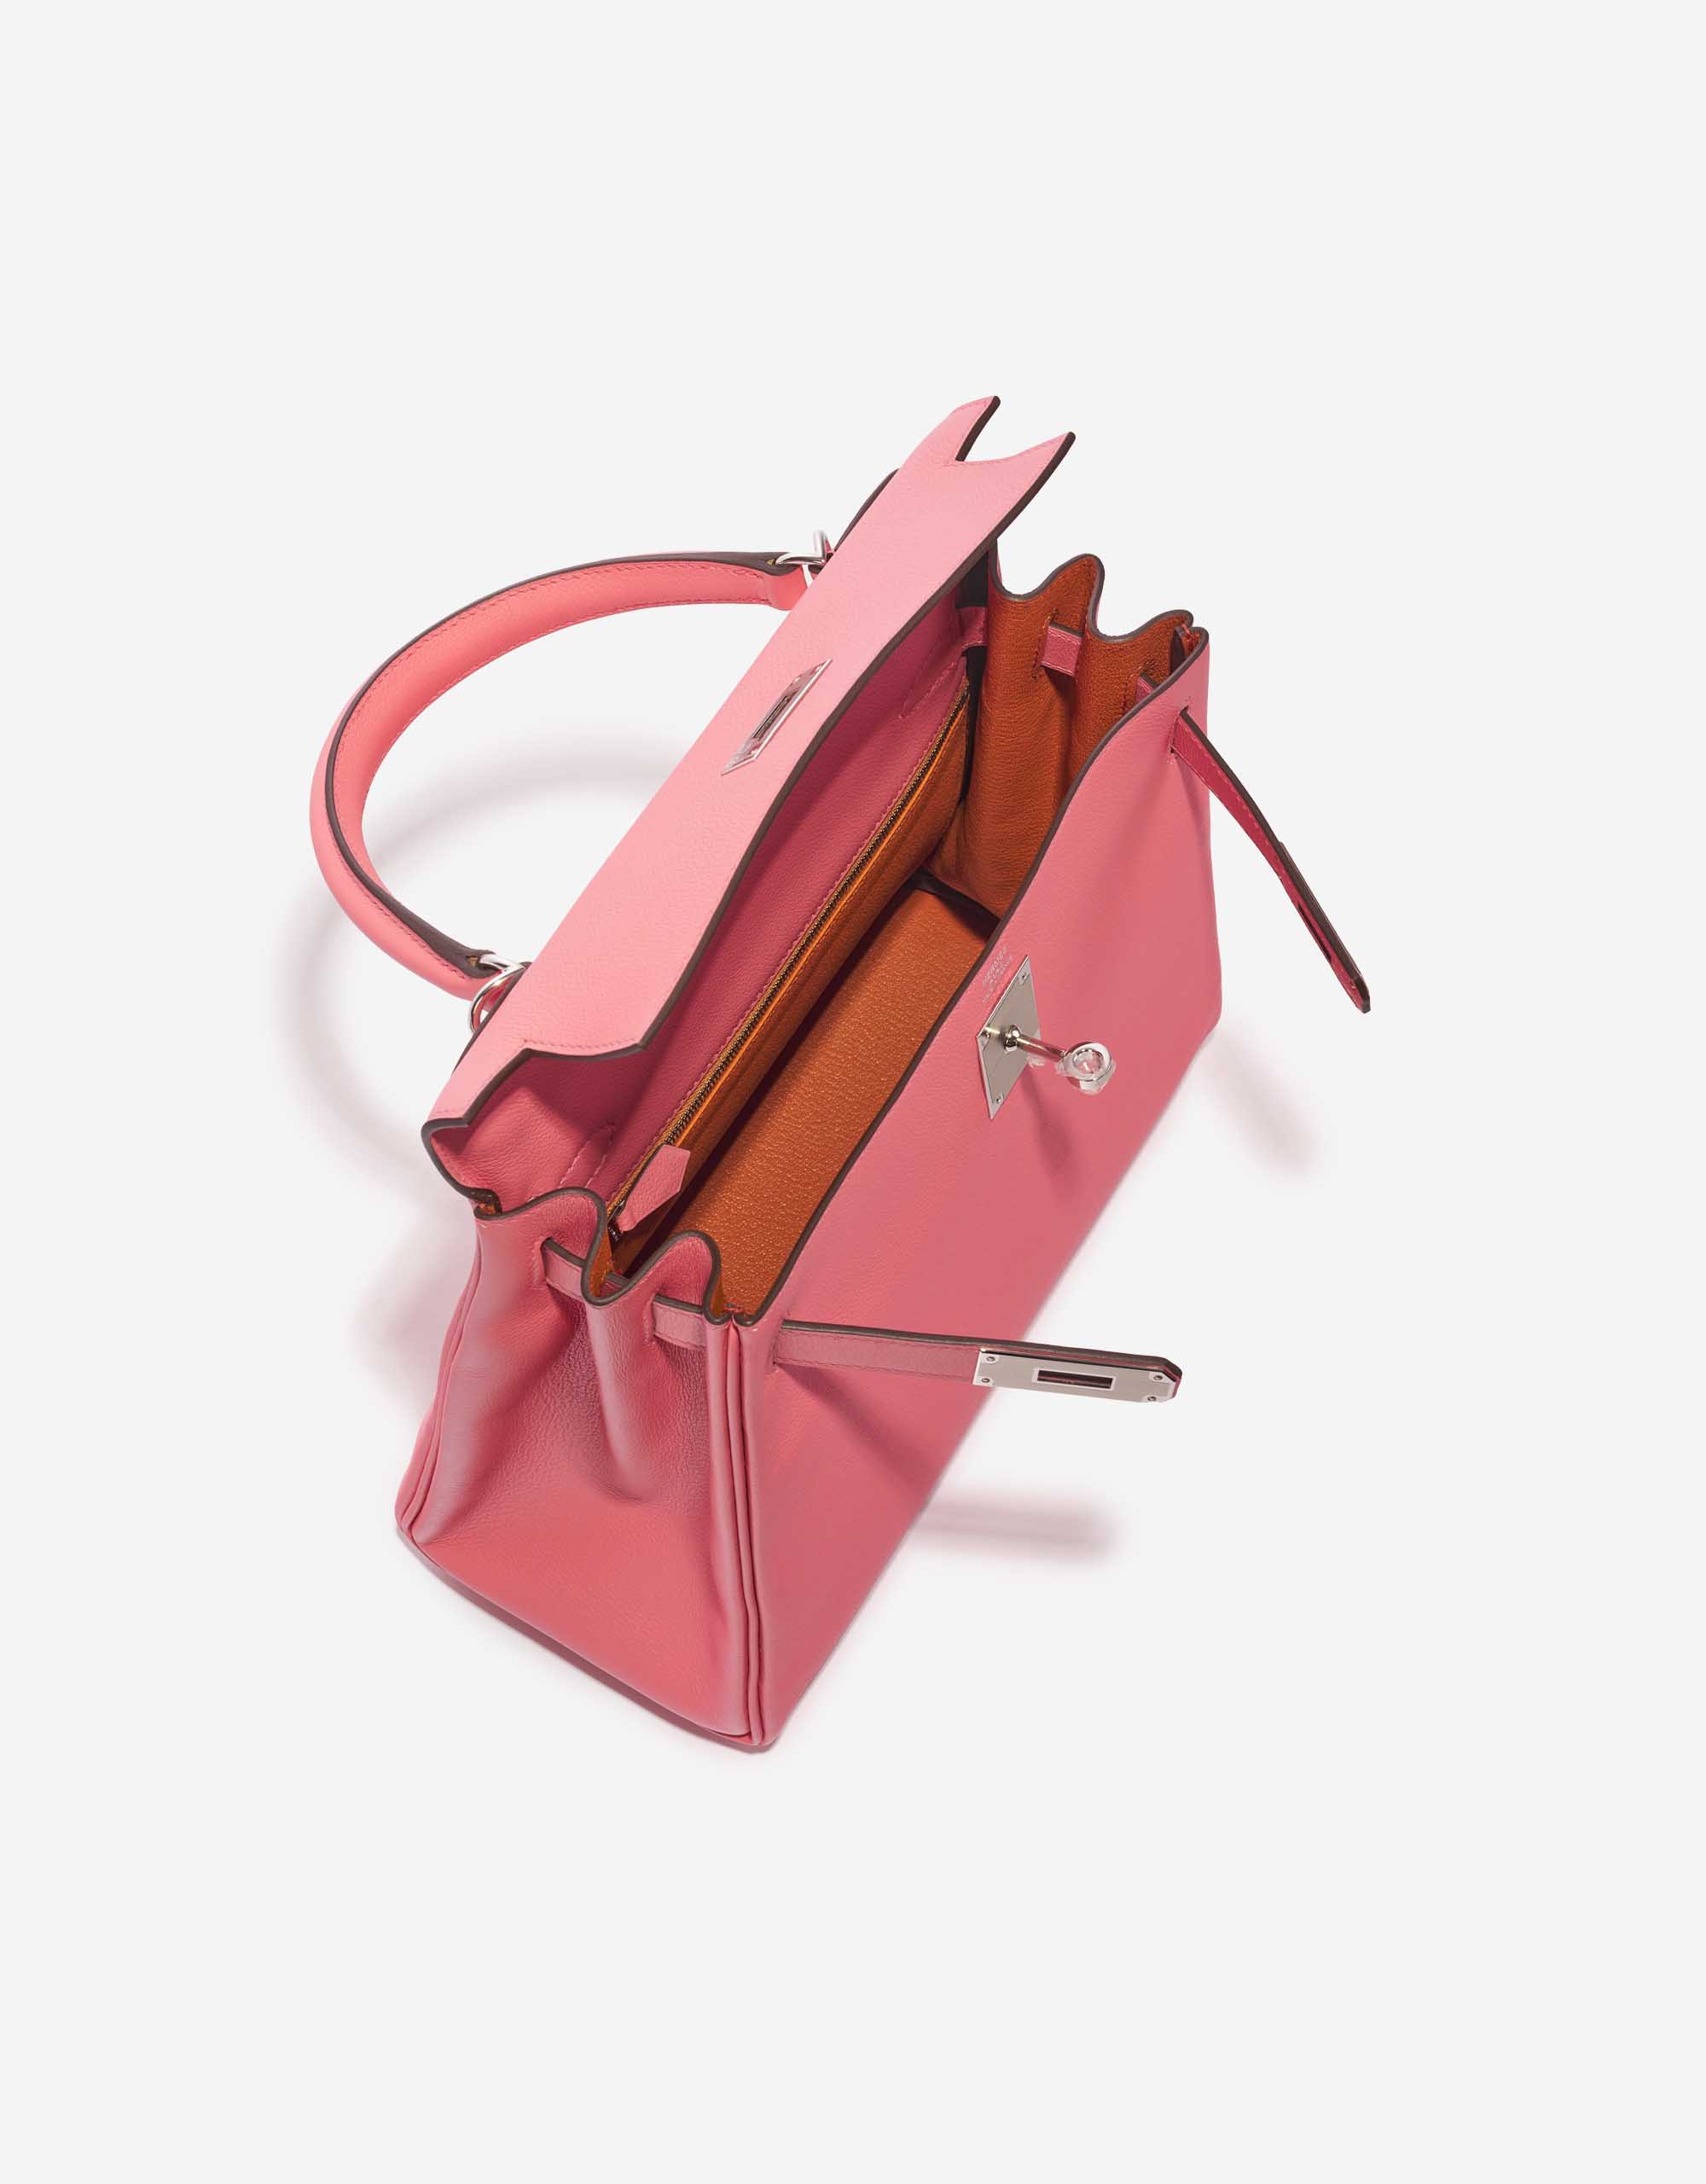 Pre-owned Hermès bag Kelly 28 Verso Evercolor Rose D’Été / Terre Battue Pink, Rose Inside | Sell your designer bag on Saclab.com